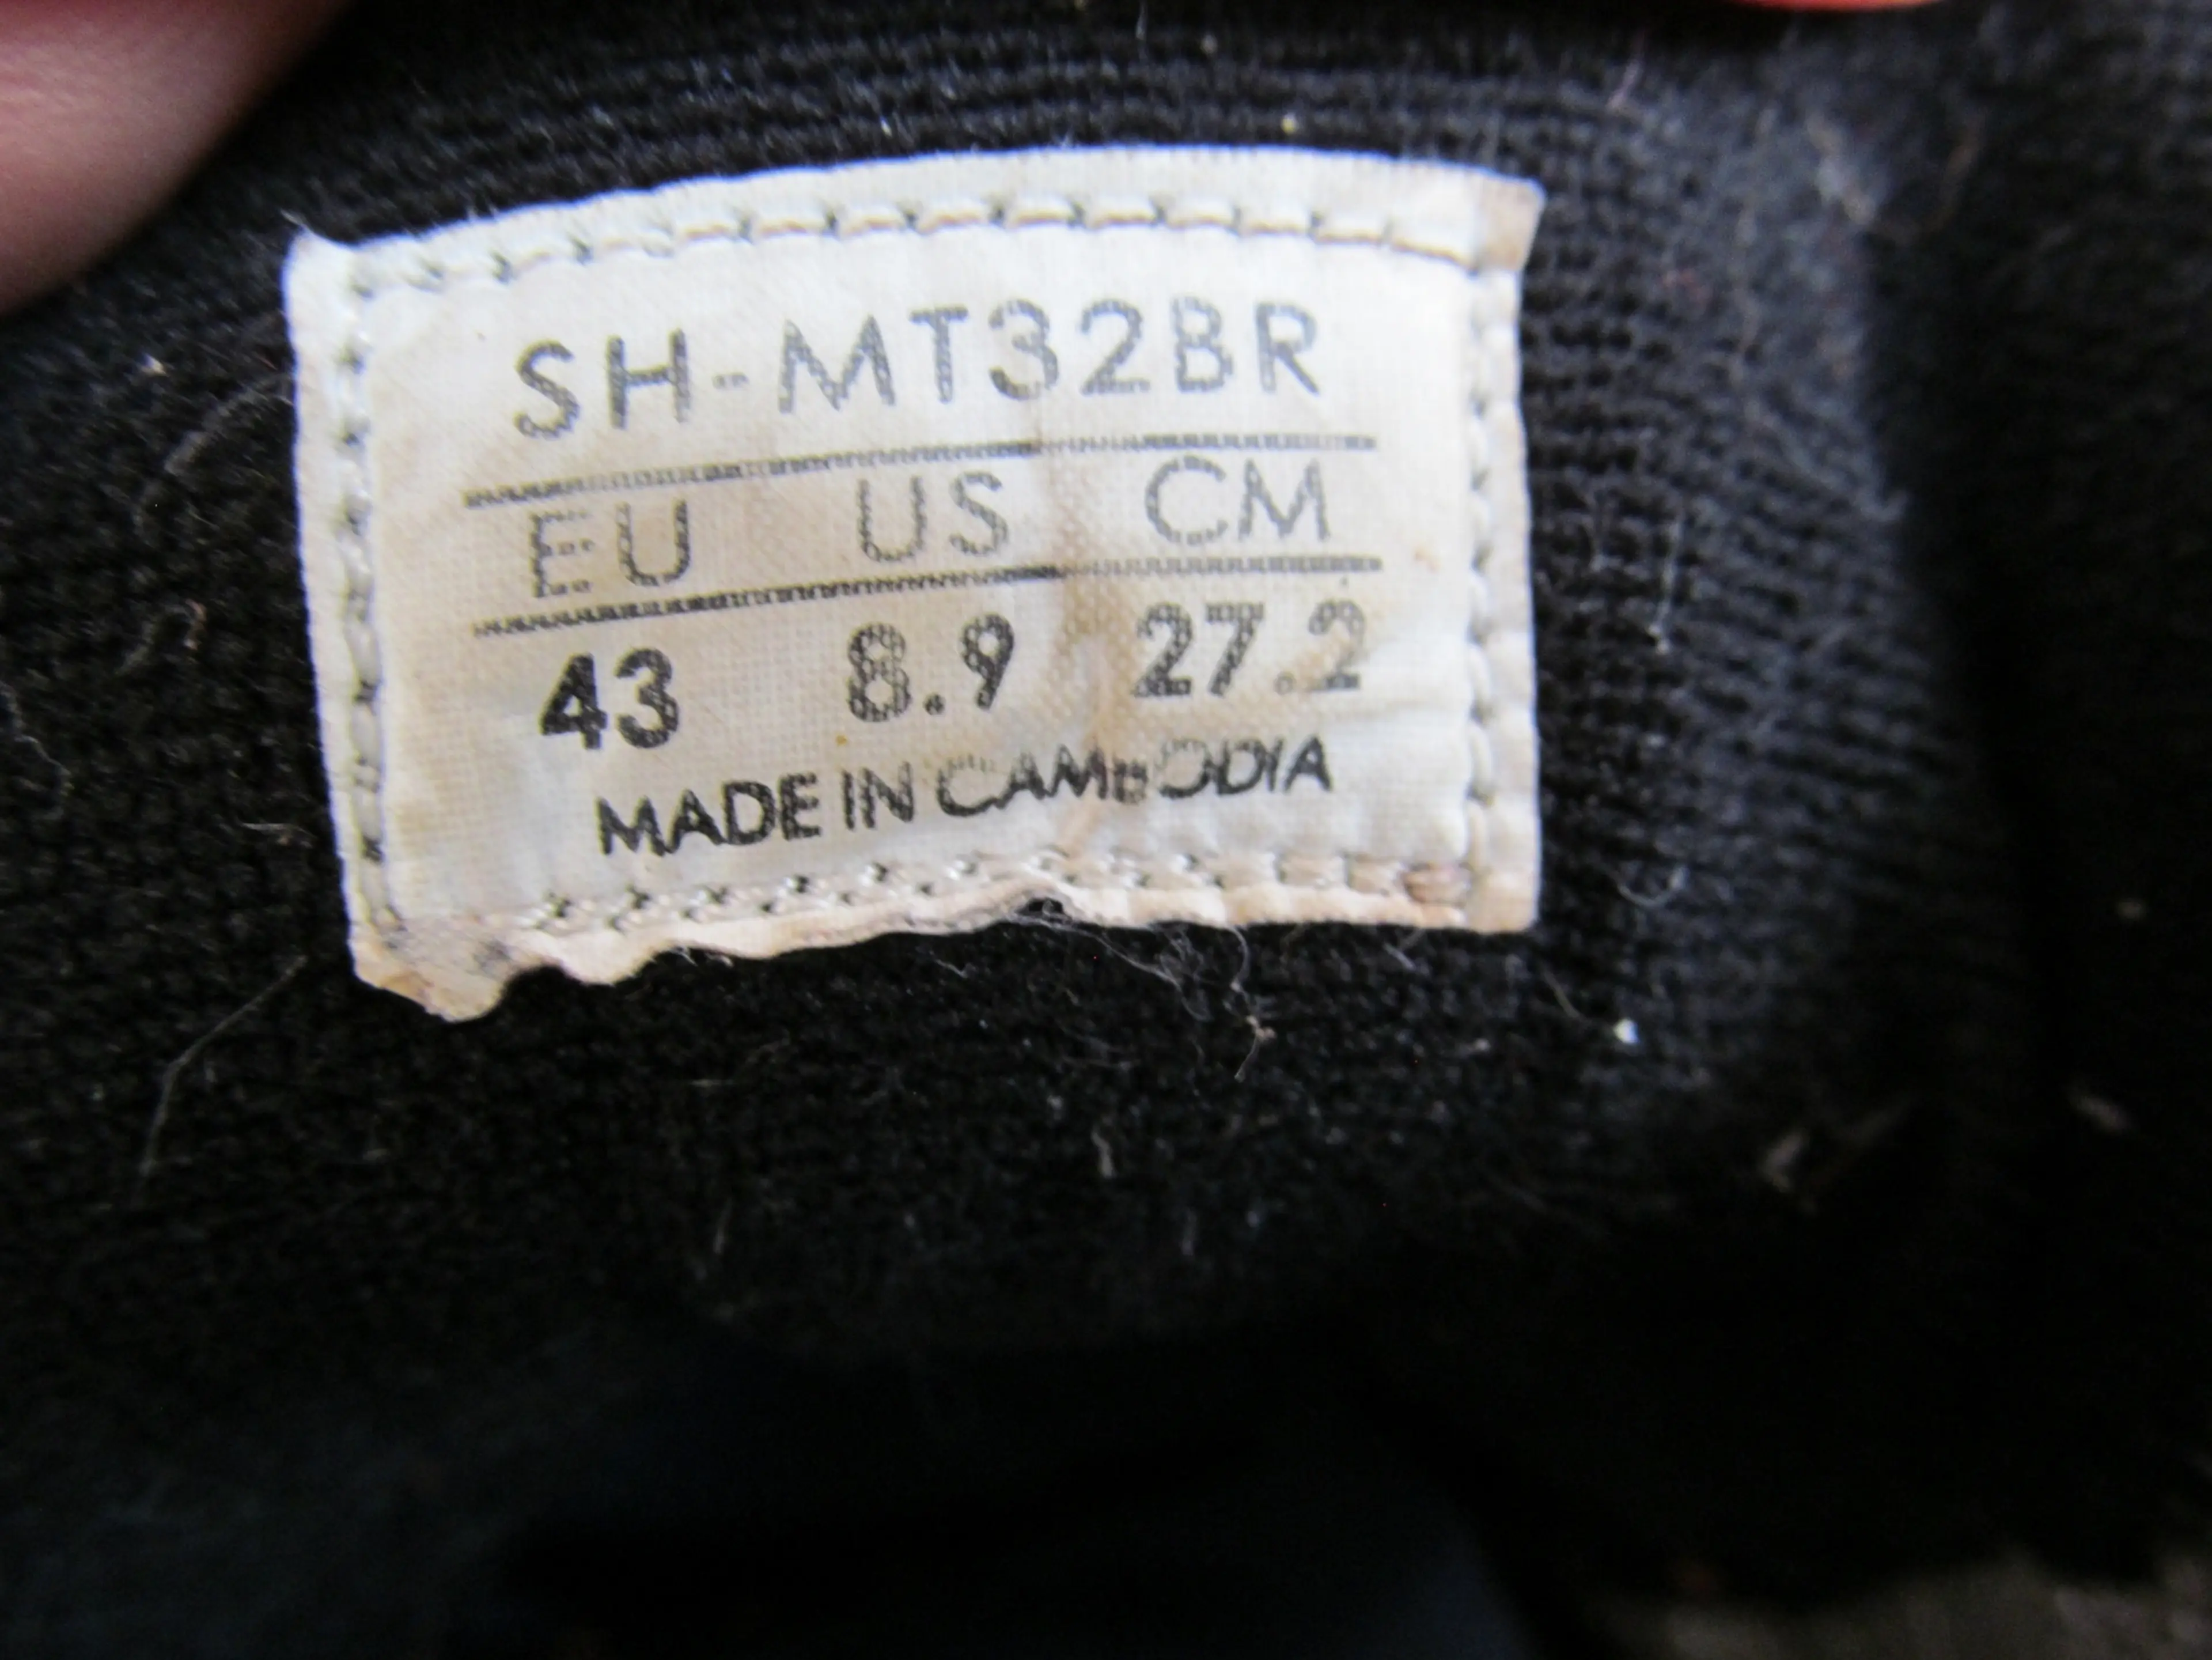 Image Pantofi Shimano SH-MT32BR nr 43, 27.2 cm